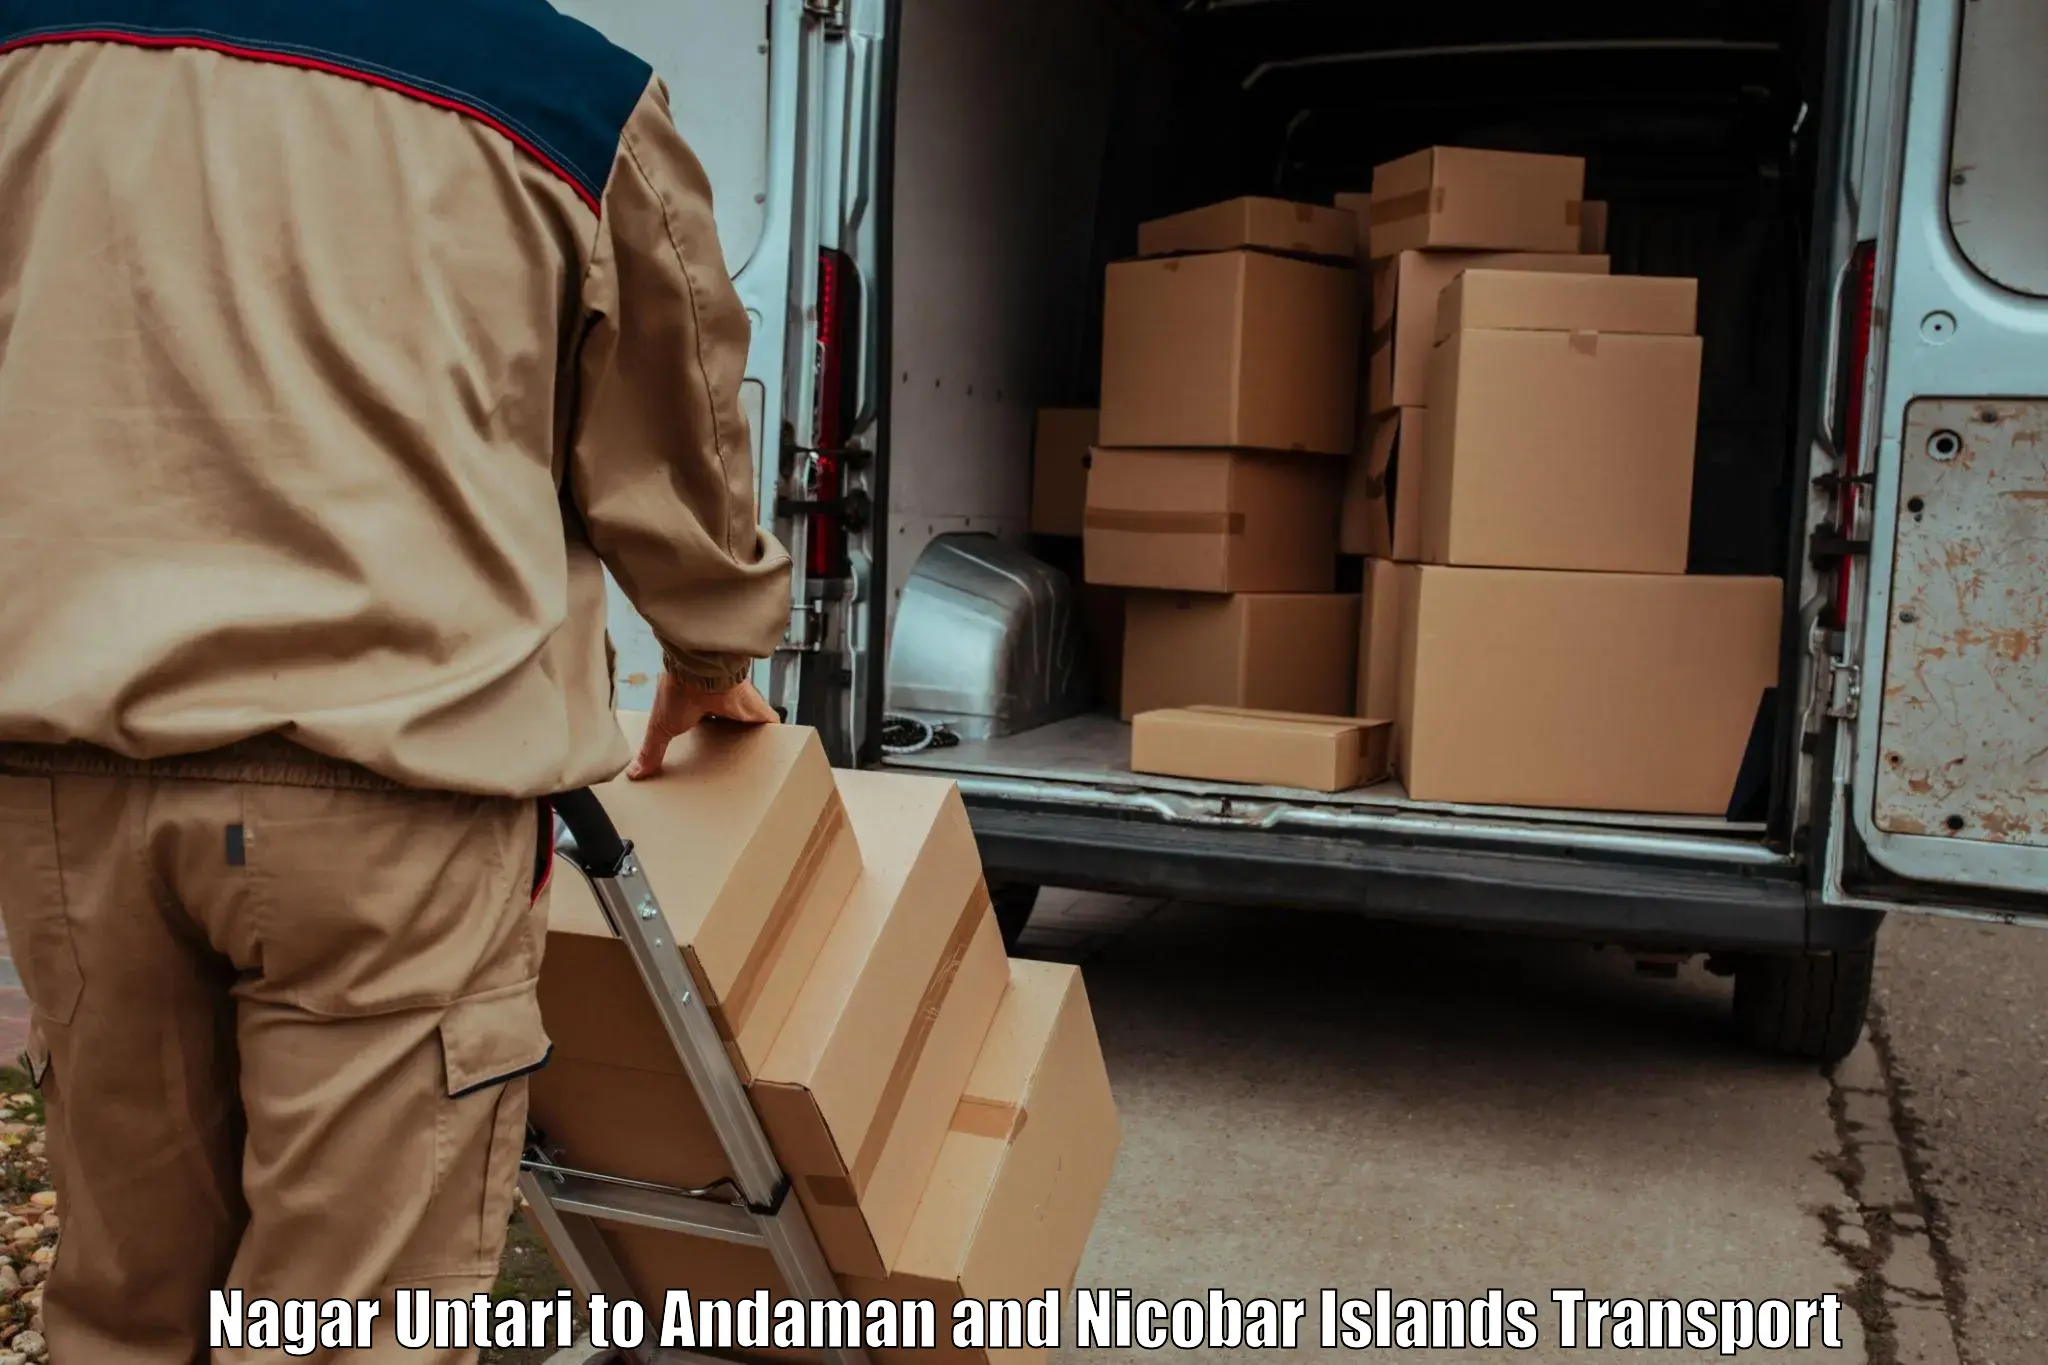 Delivery service Nagar Untari to Andaman and Nicobar Islands